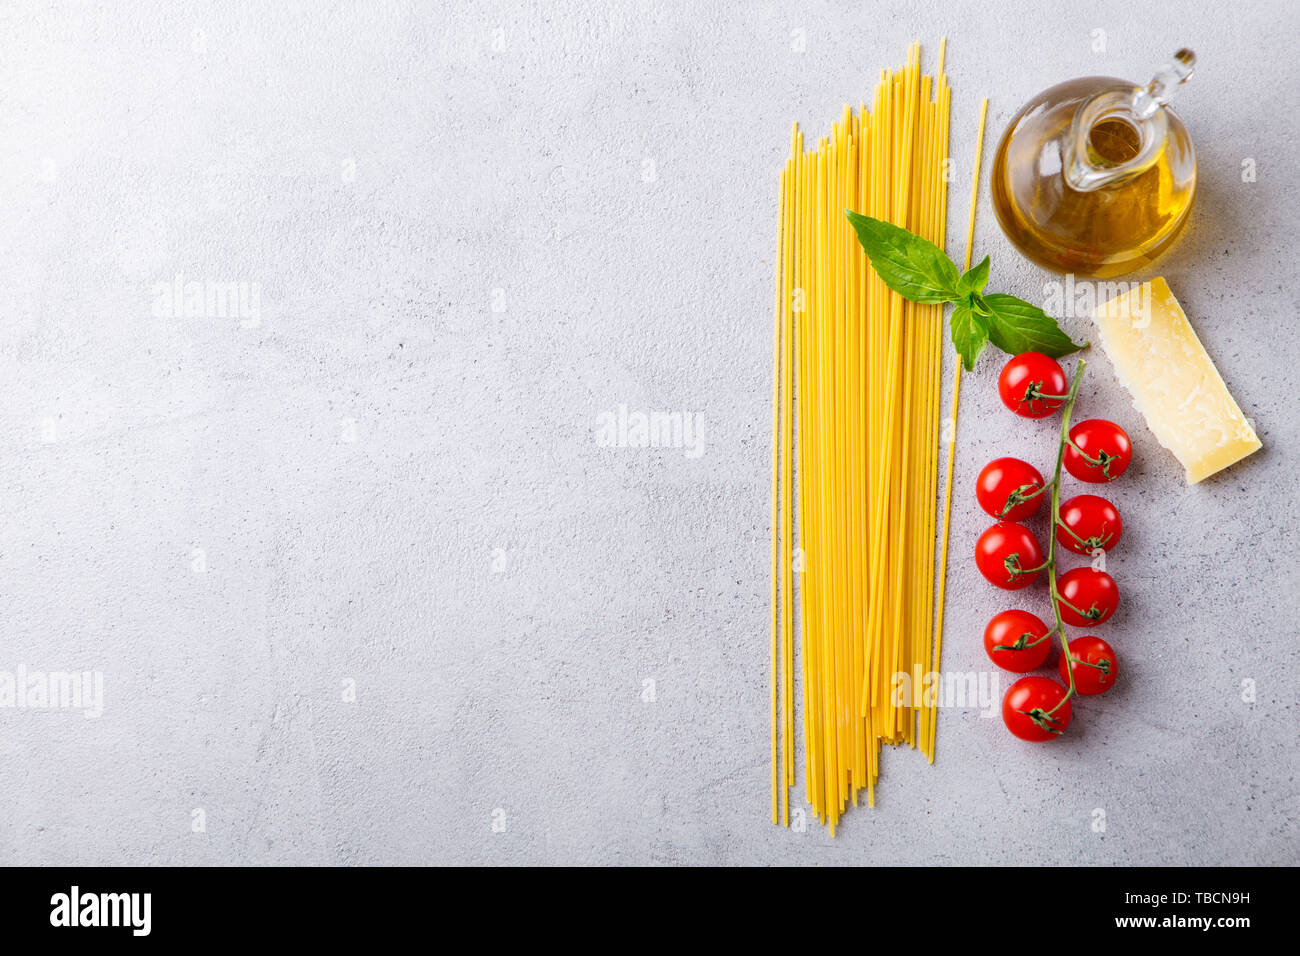 Ingrédients pour la cuisson des pâtes spaghetti. Vue d'en haut. Copier l'espace. Fond gris. Banque D'Images